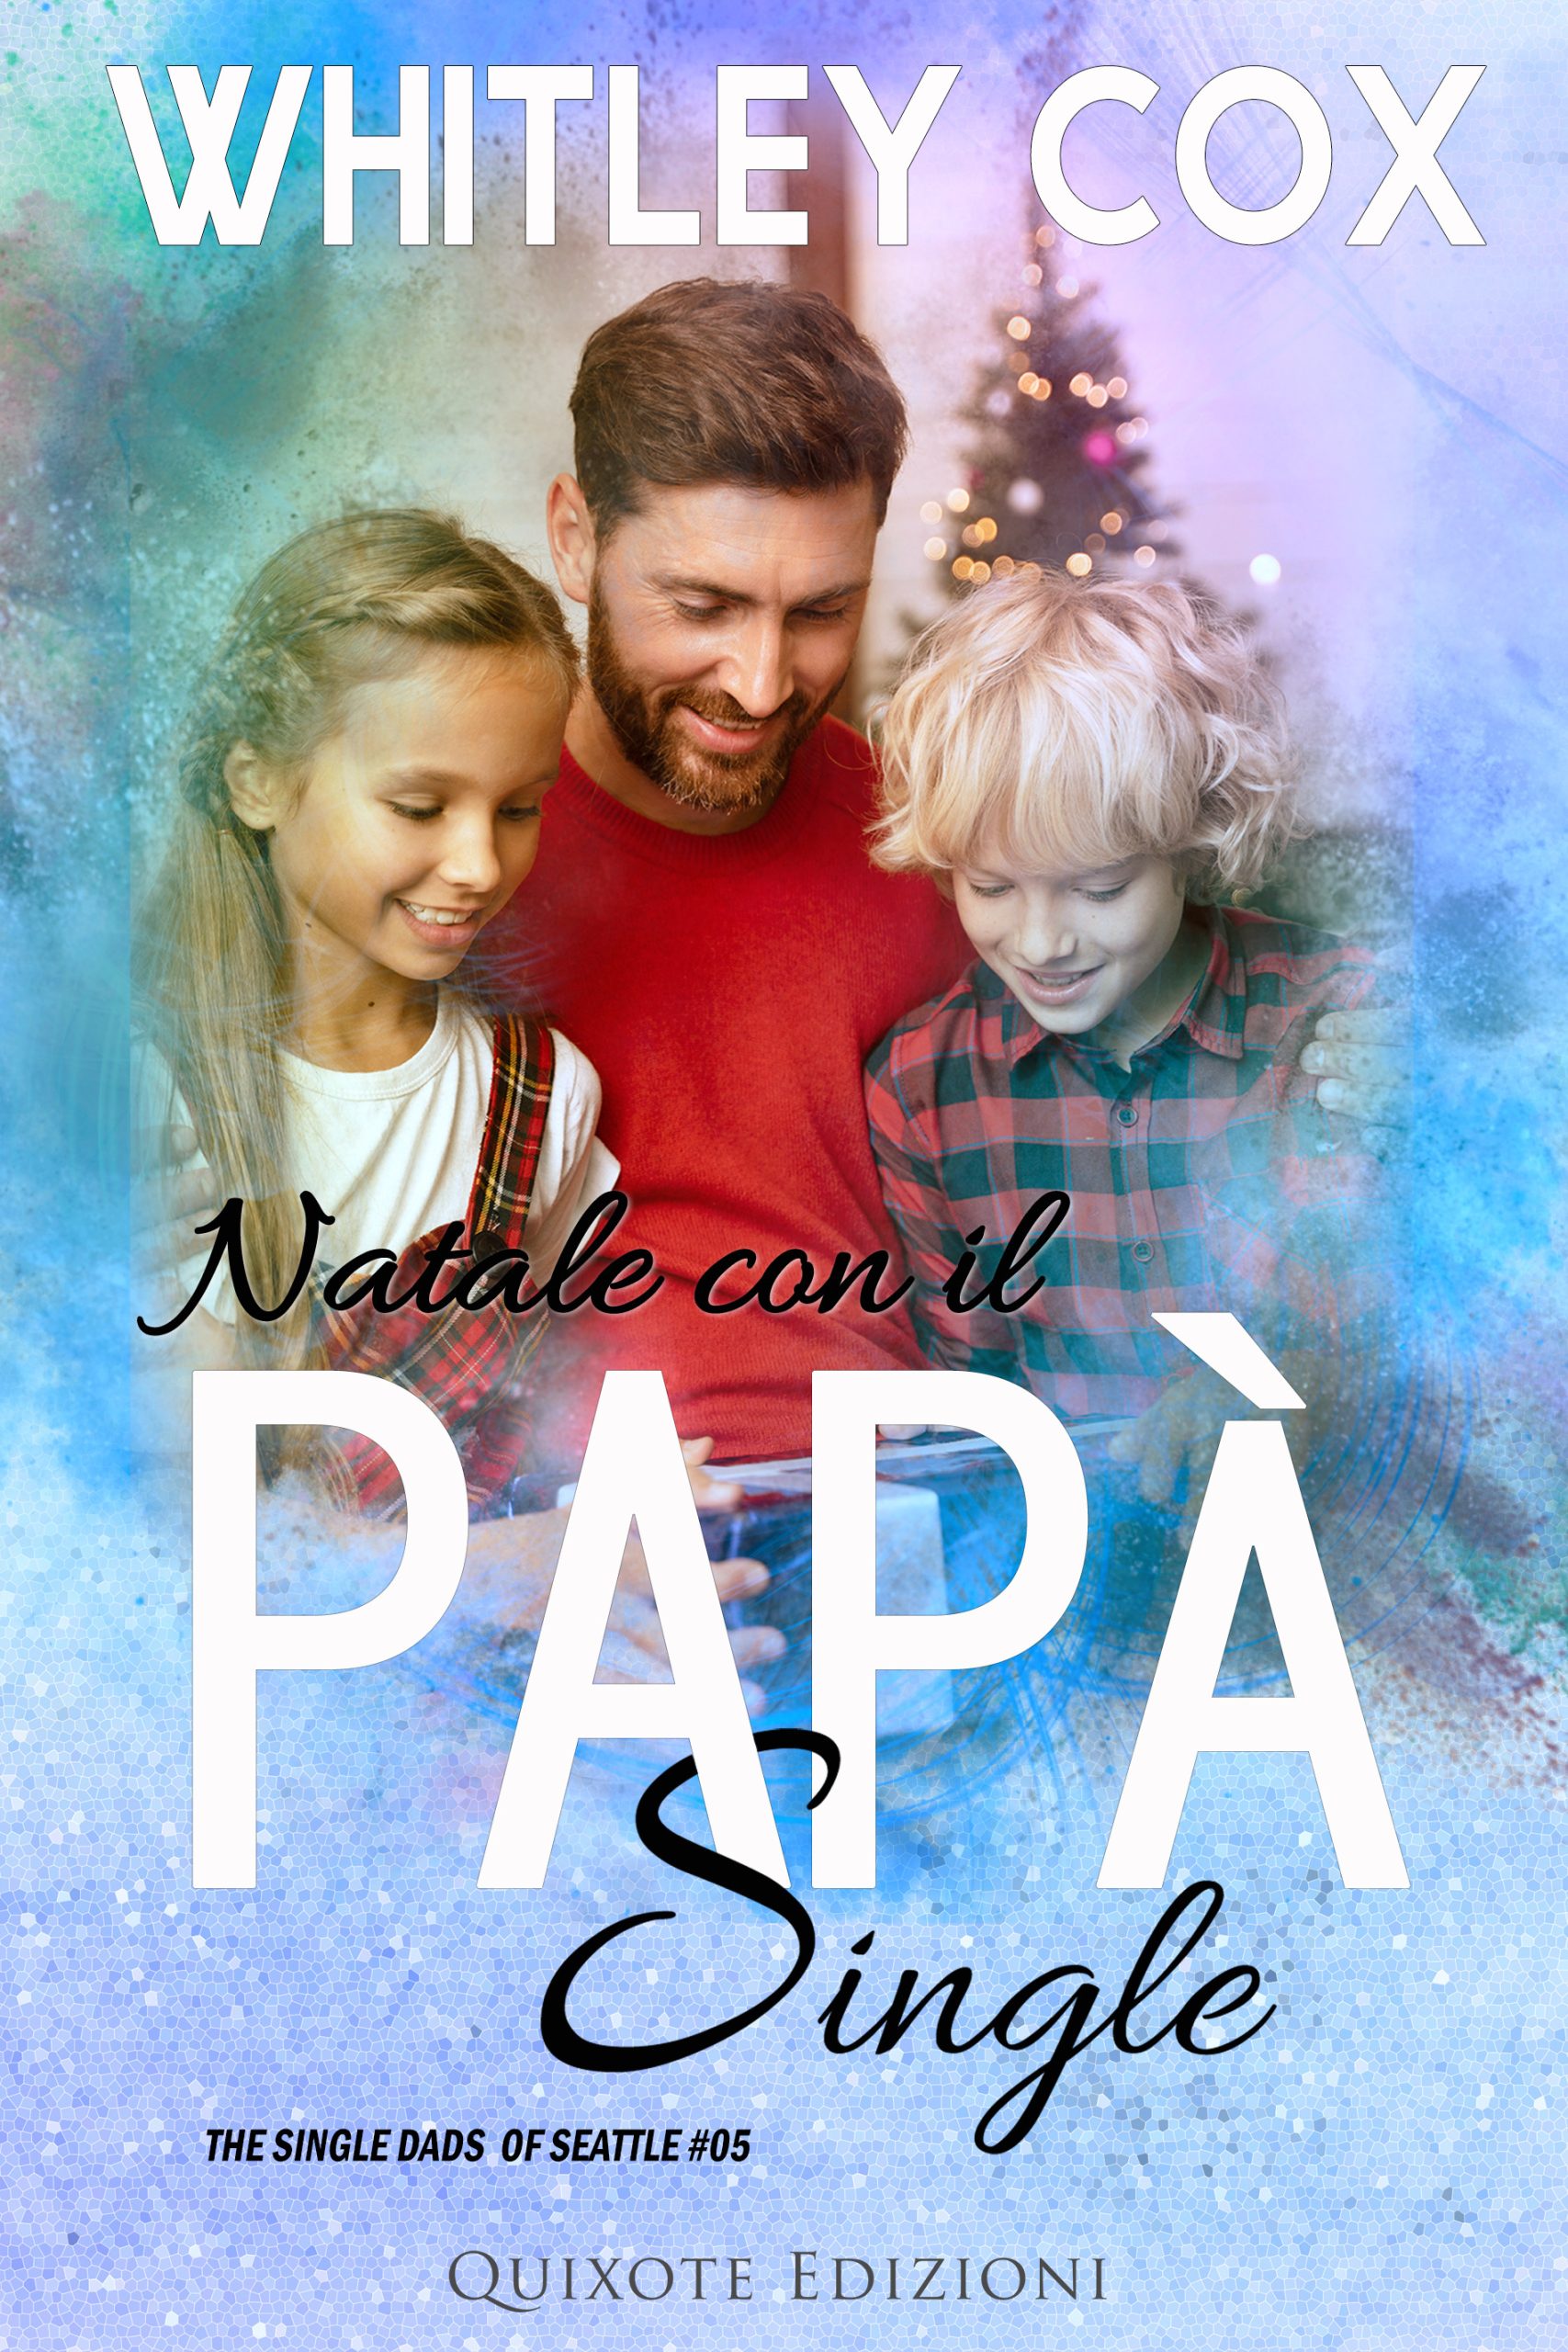 Segnalazione di uscita “Natale con il papà single” -SERIE: The single dads of Seattle #5  di Whitley Cox